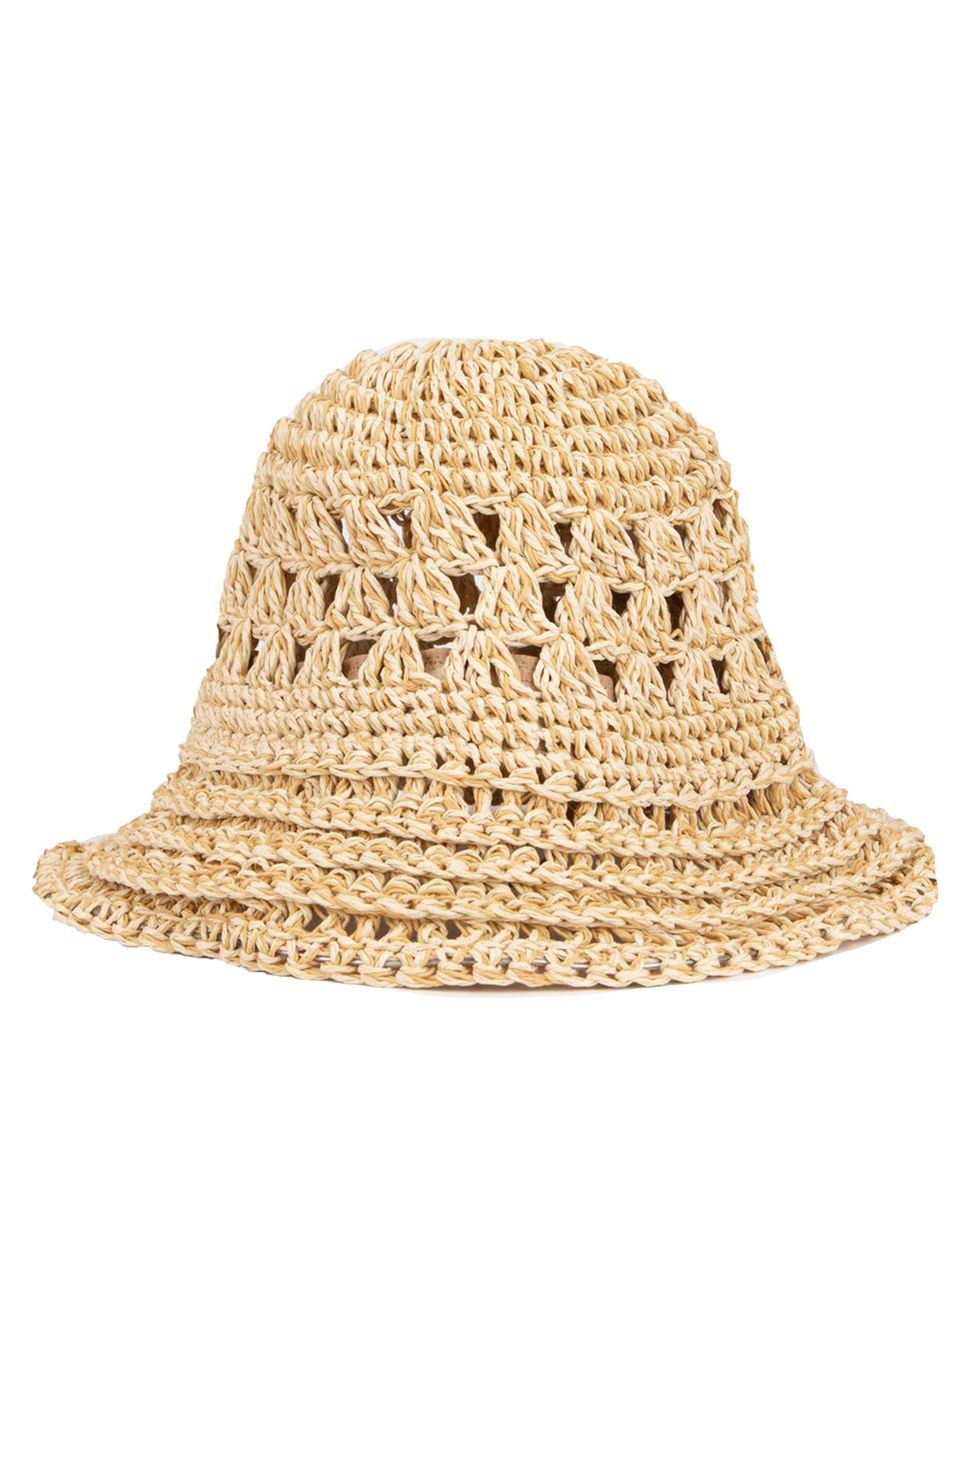 Raffia Women's Bucket Hat